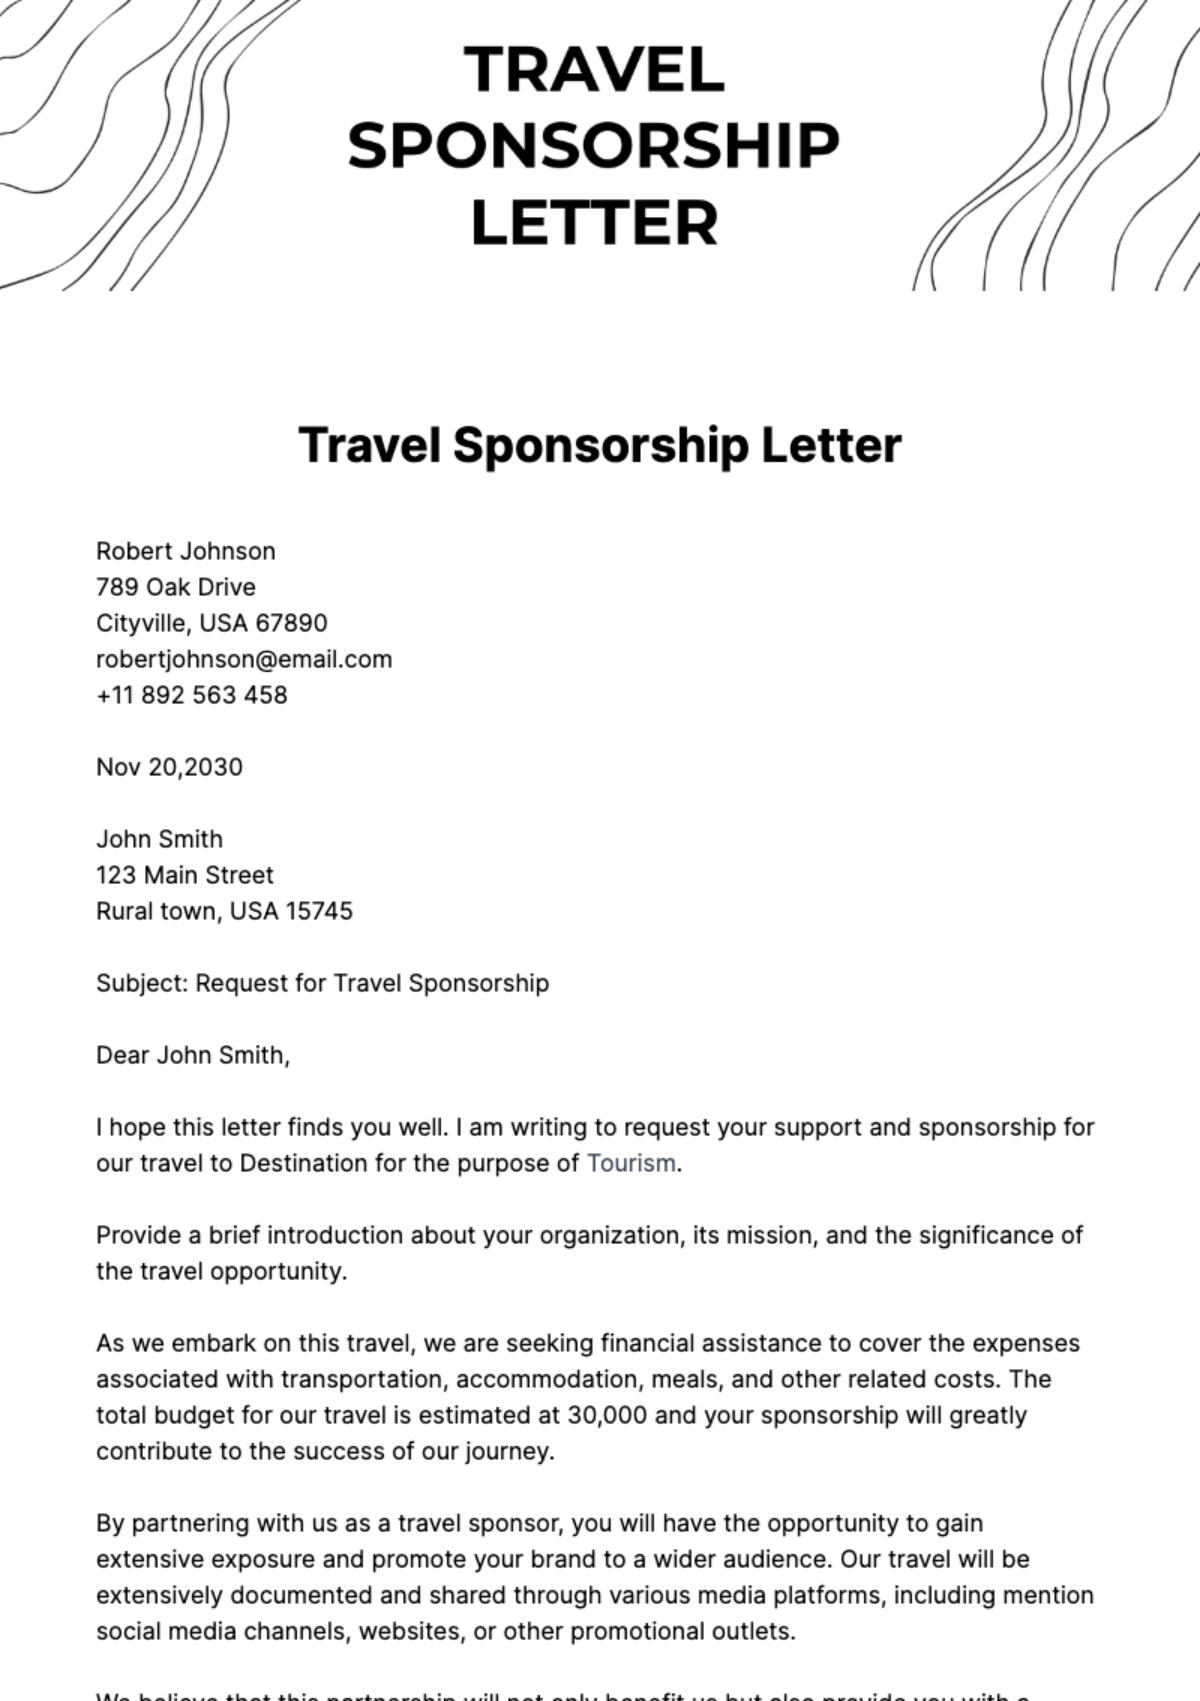 Travel Sponsorship Letter Template